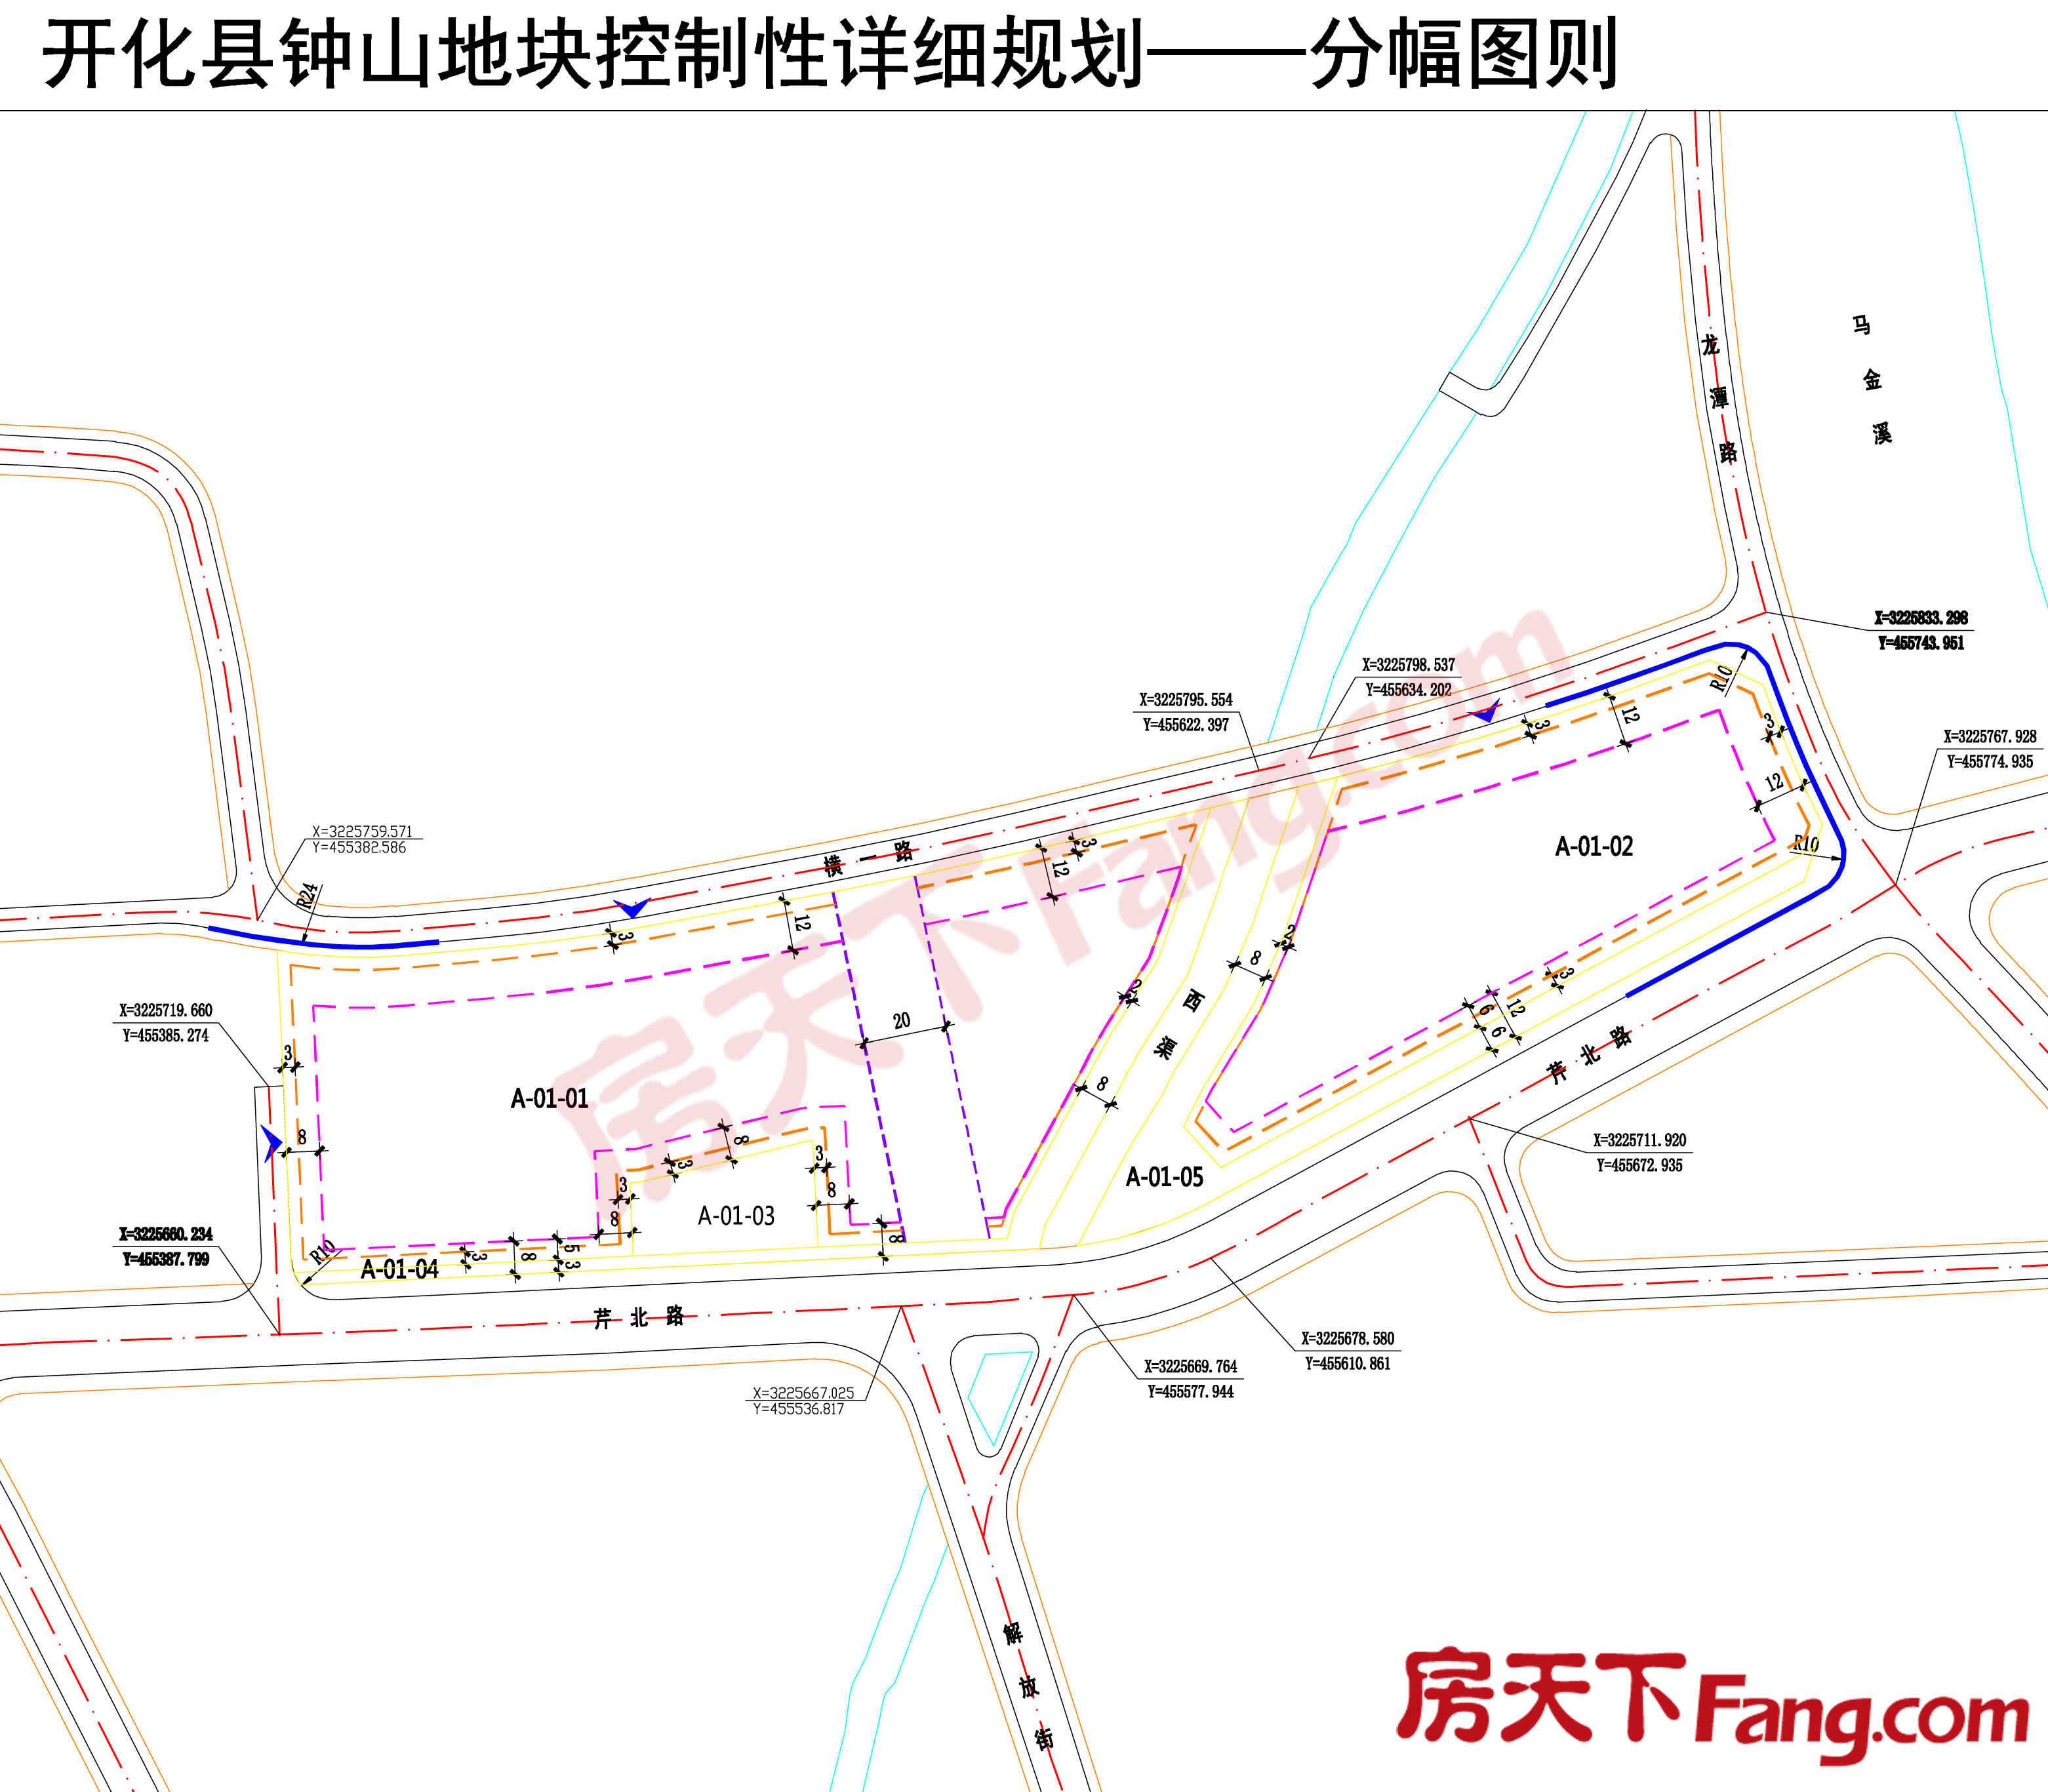 开化县中心城区钟山地块规划调整 含住宅、商业用地